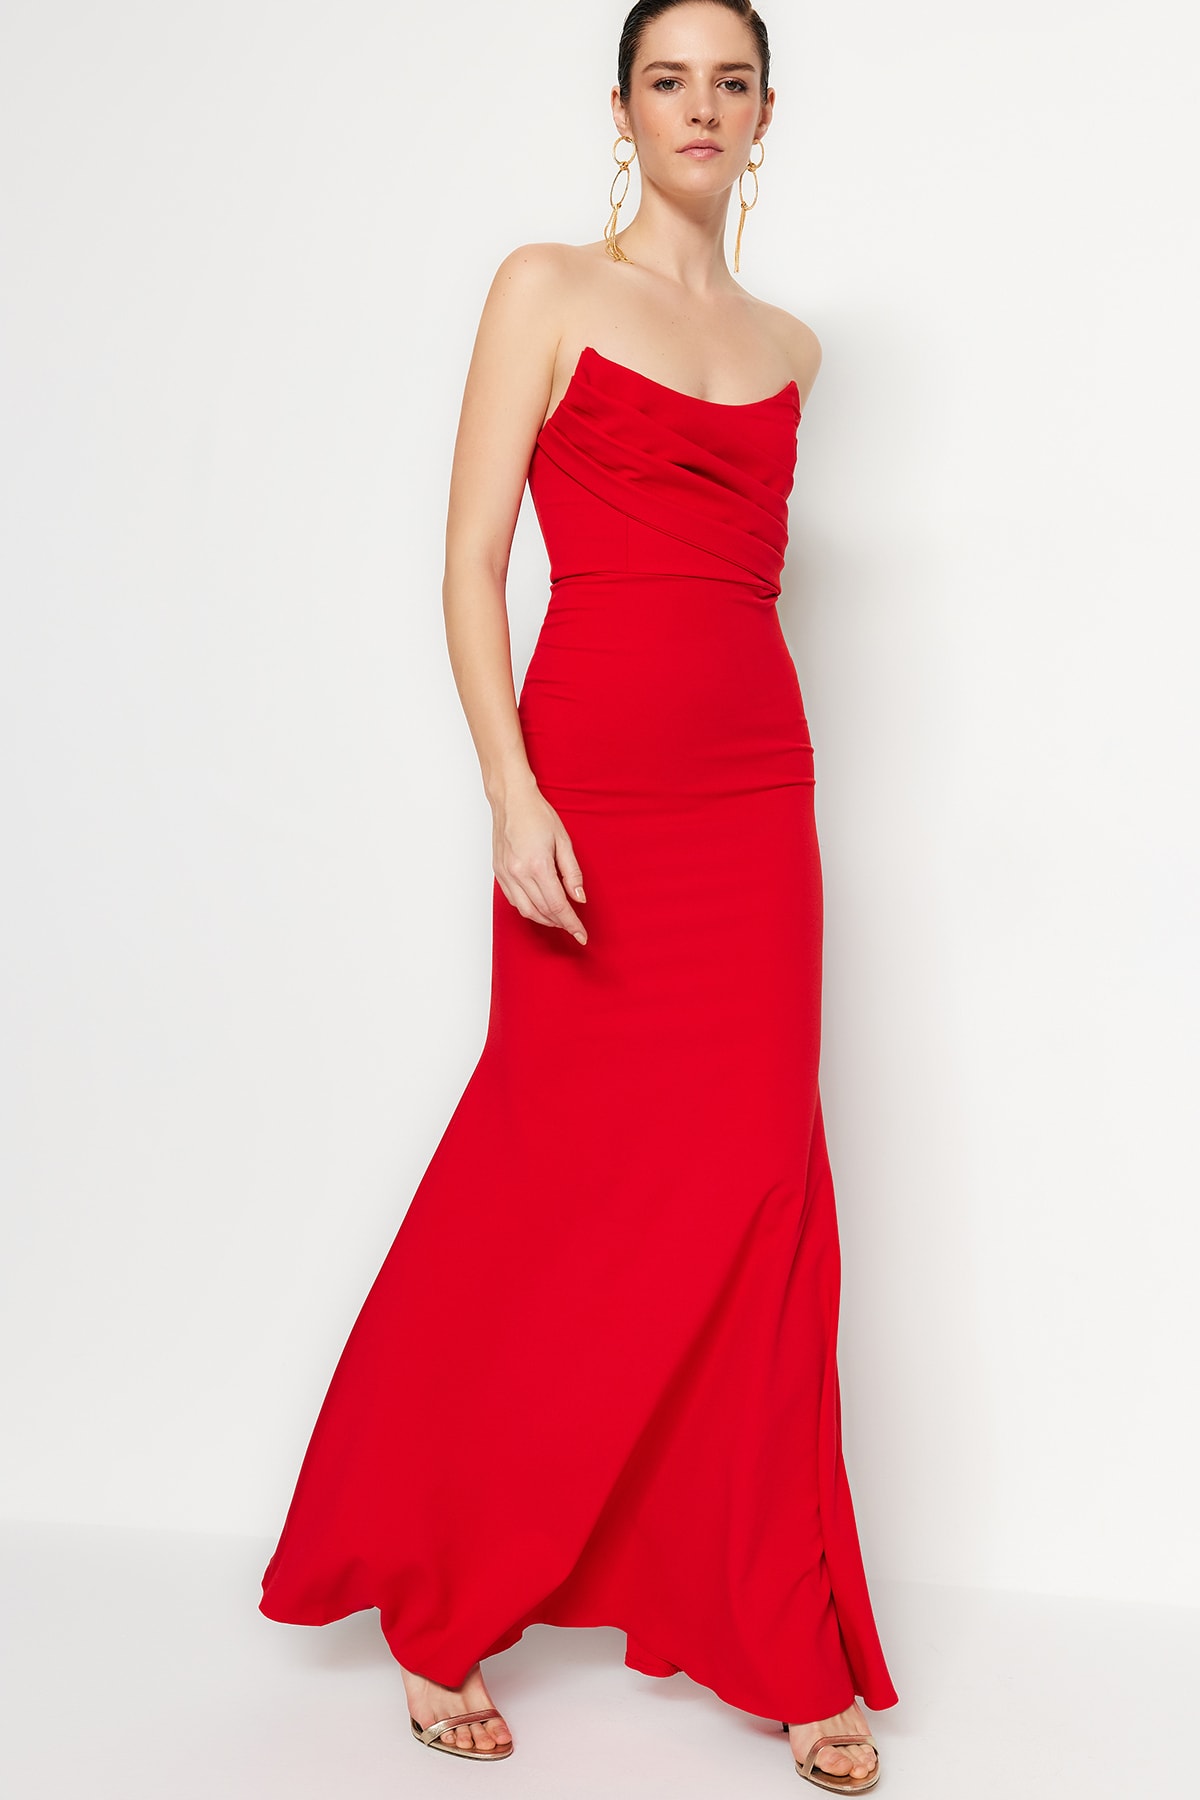 Trendyol Collection Abendkleid & Abschlusskleid Rot Meerjungfrau-Linie